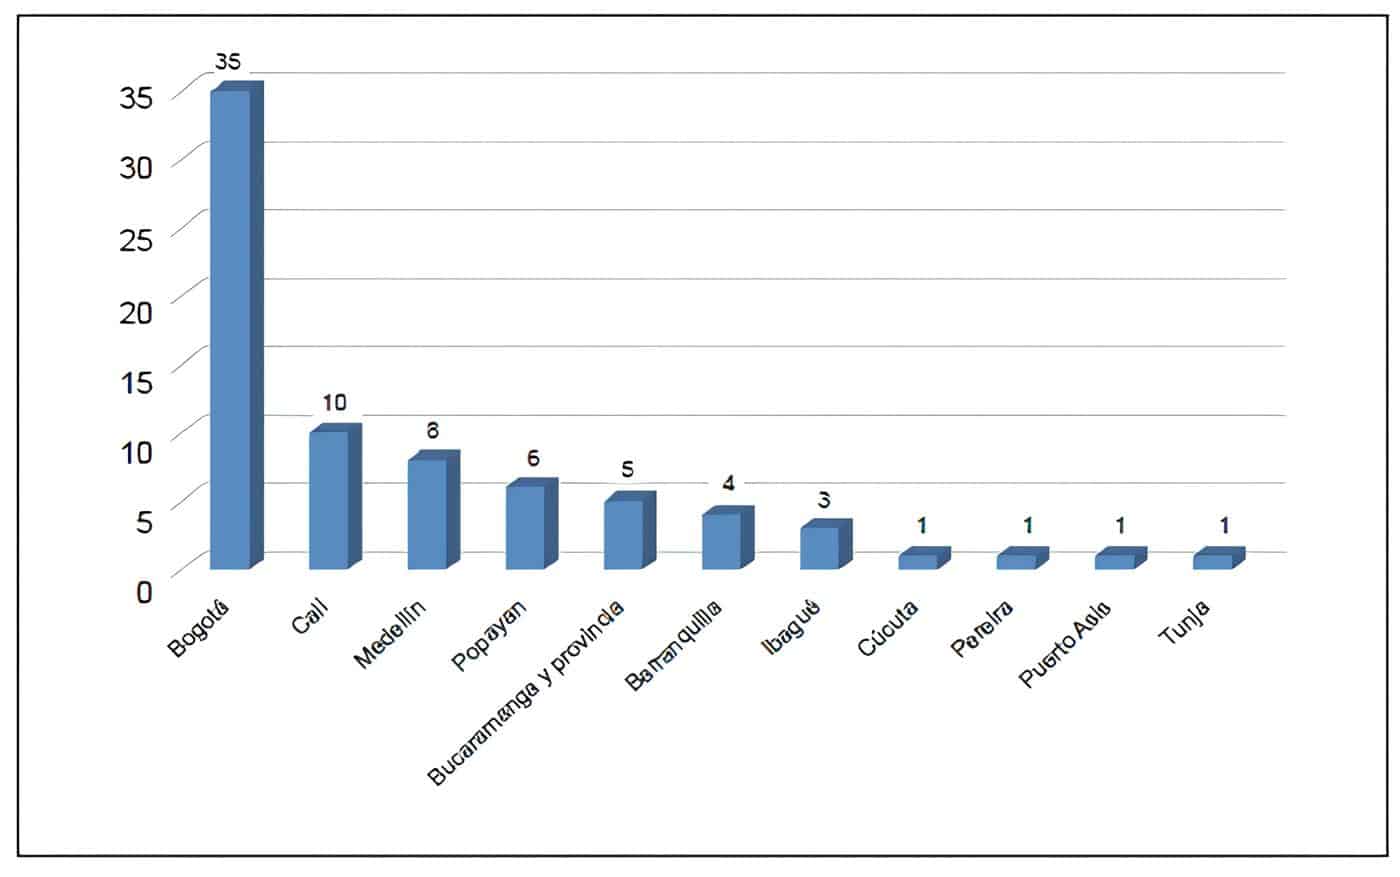 Distribución por ciudades de los cirujanos que participaron en el estudio